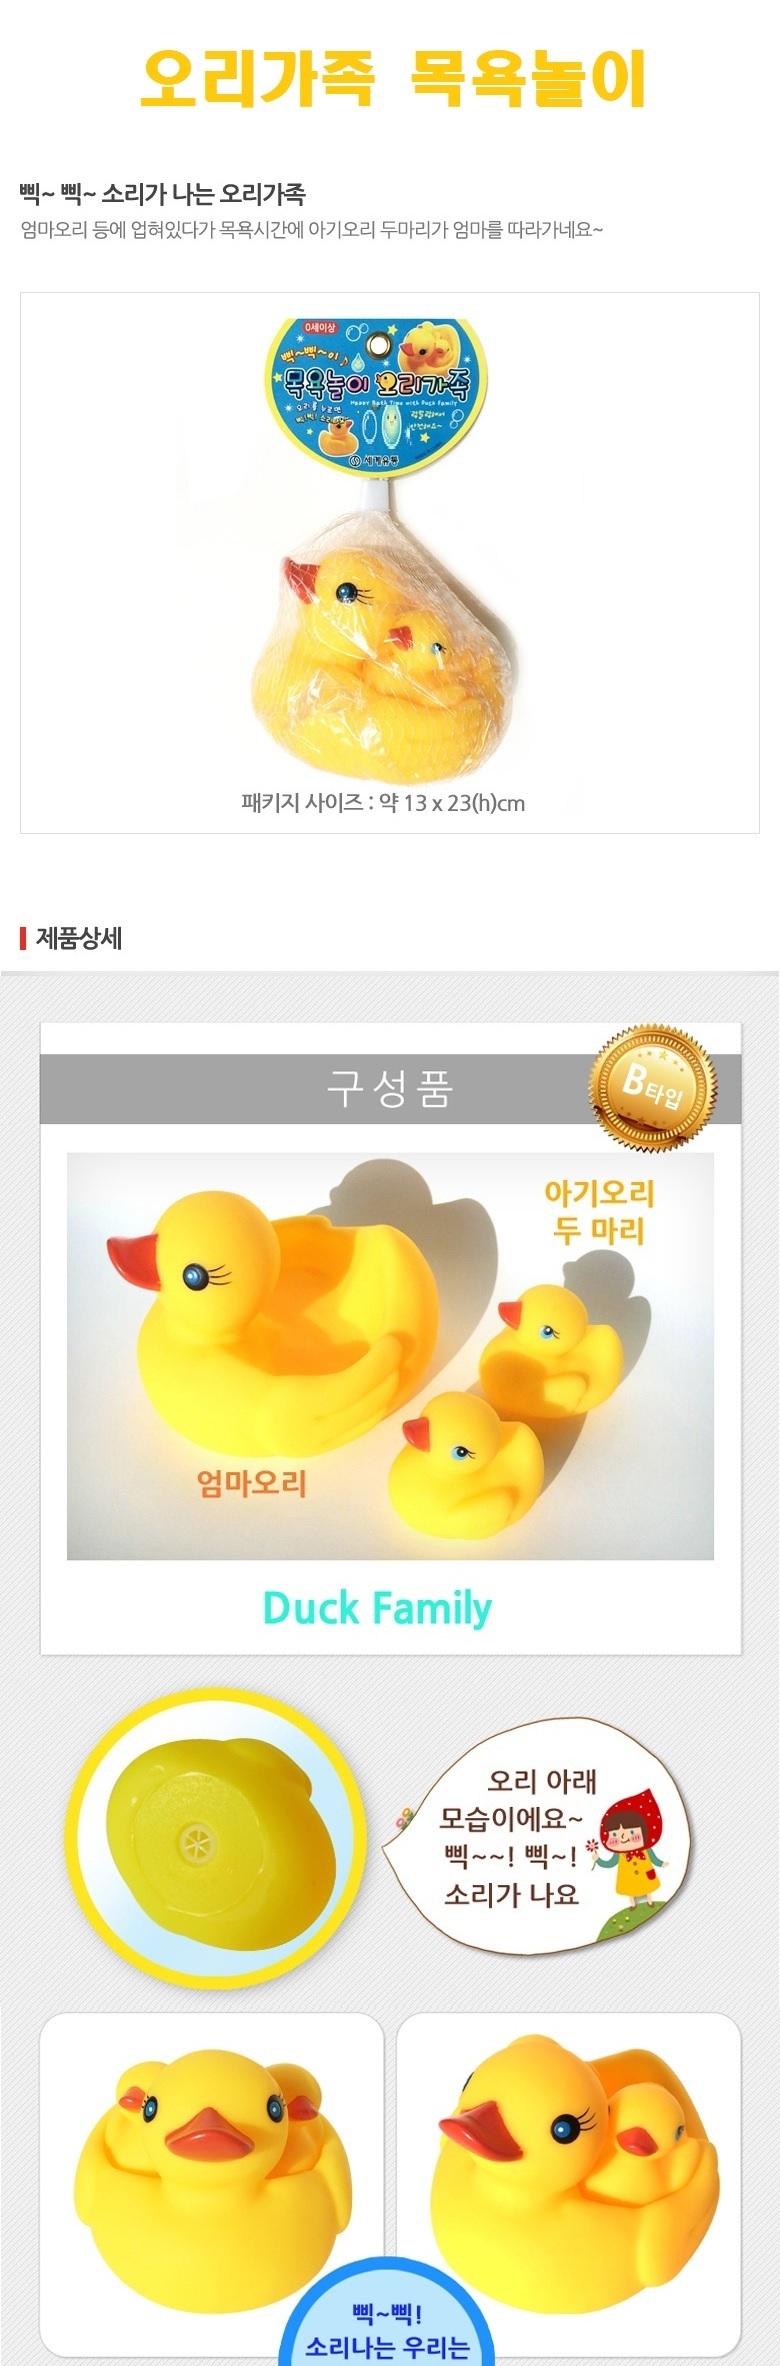 duckfamily_6000_1.jpg